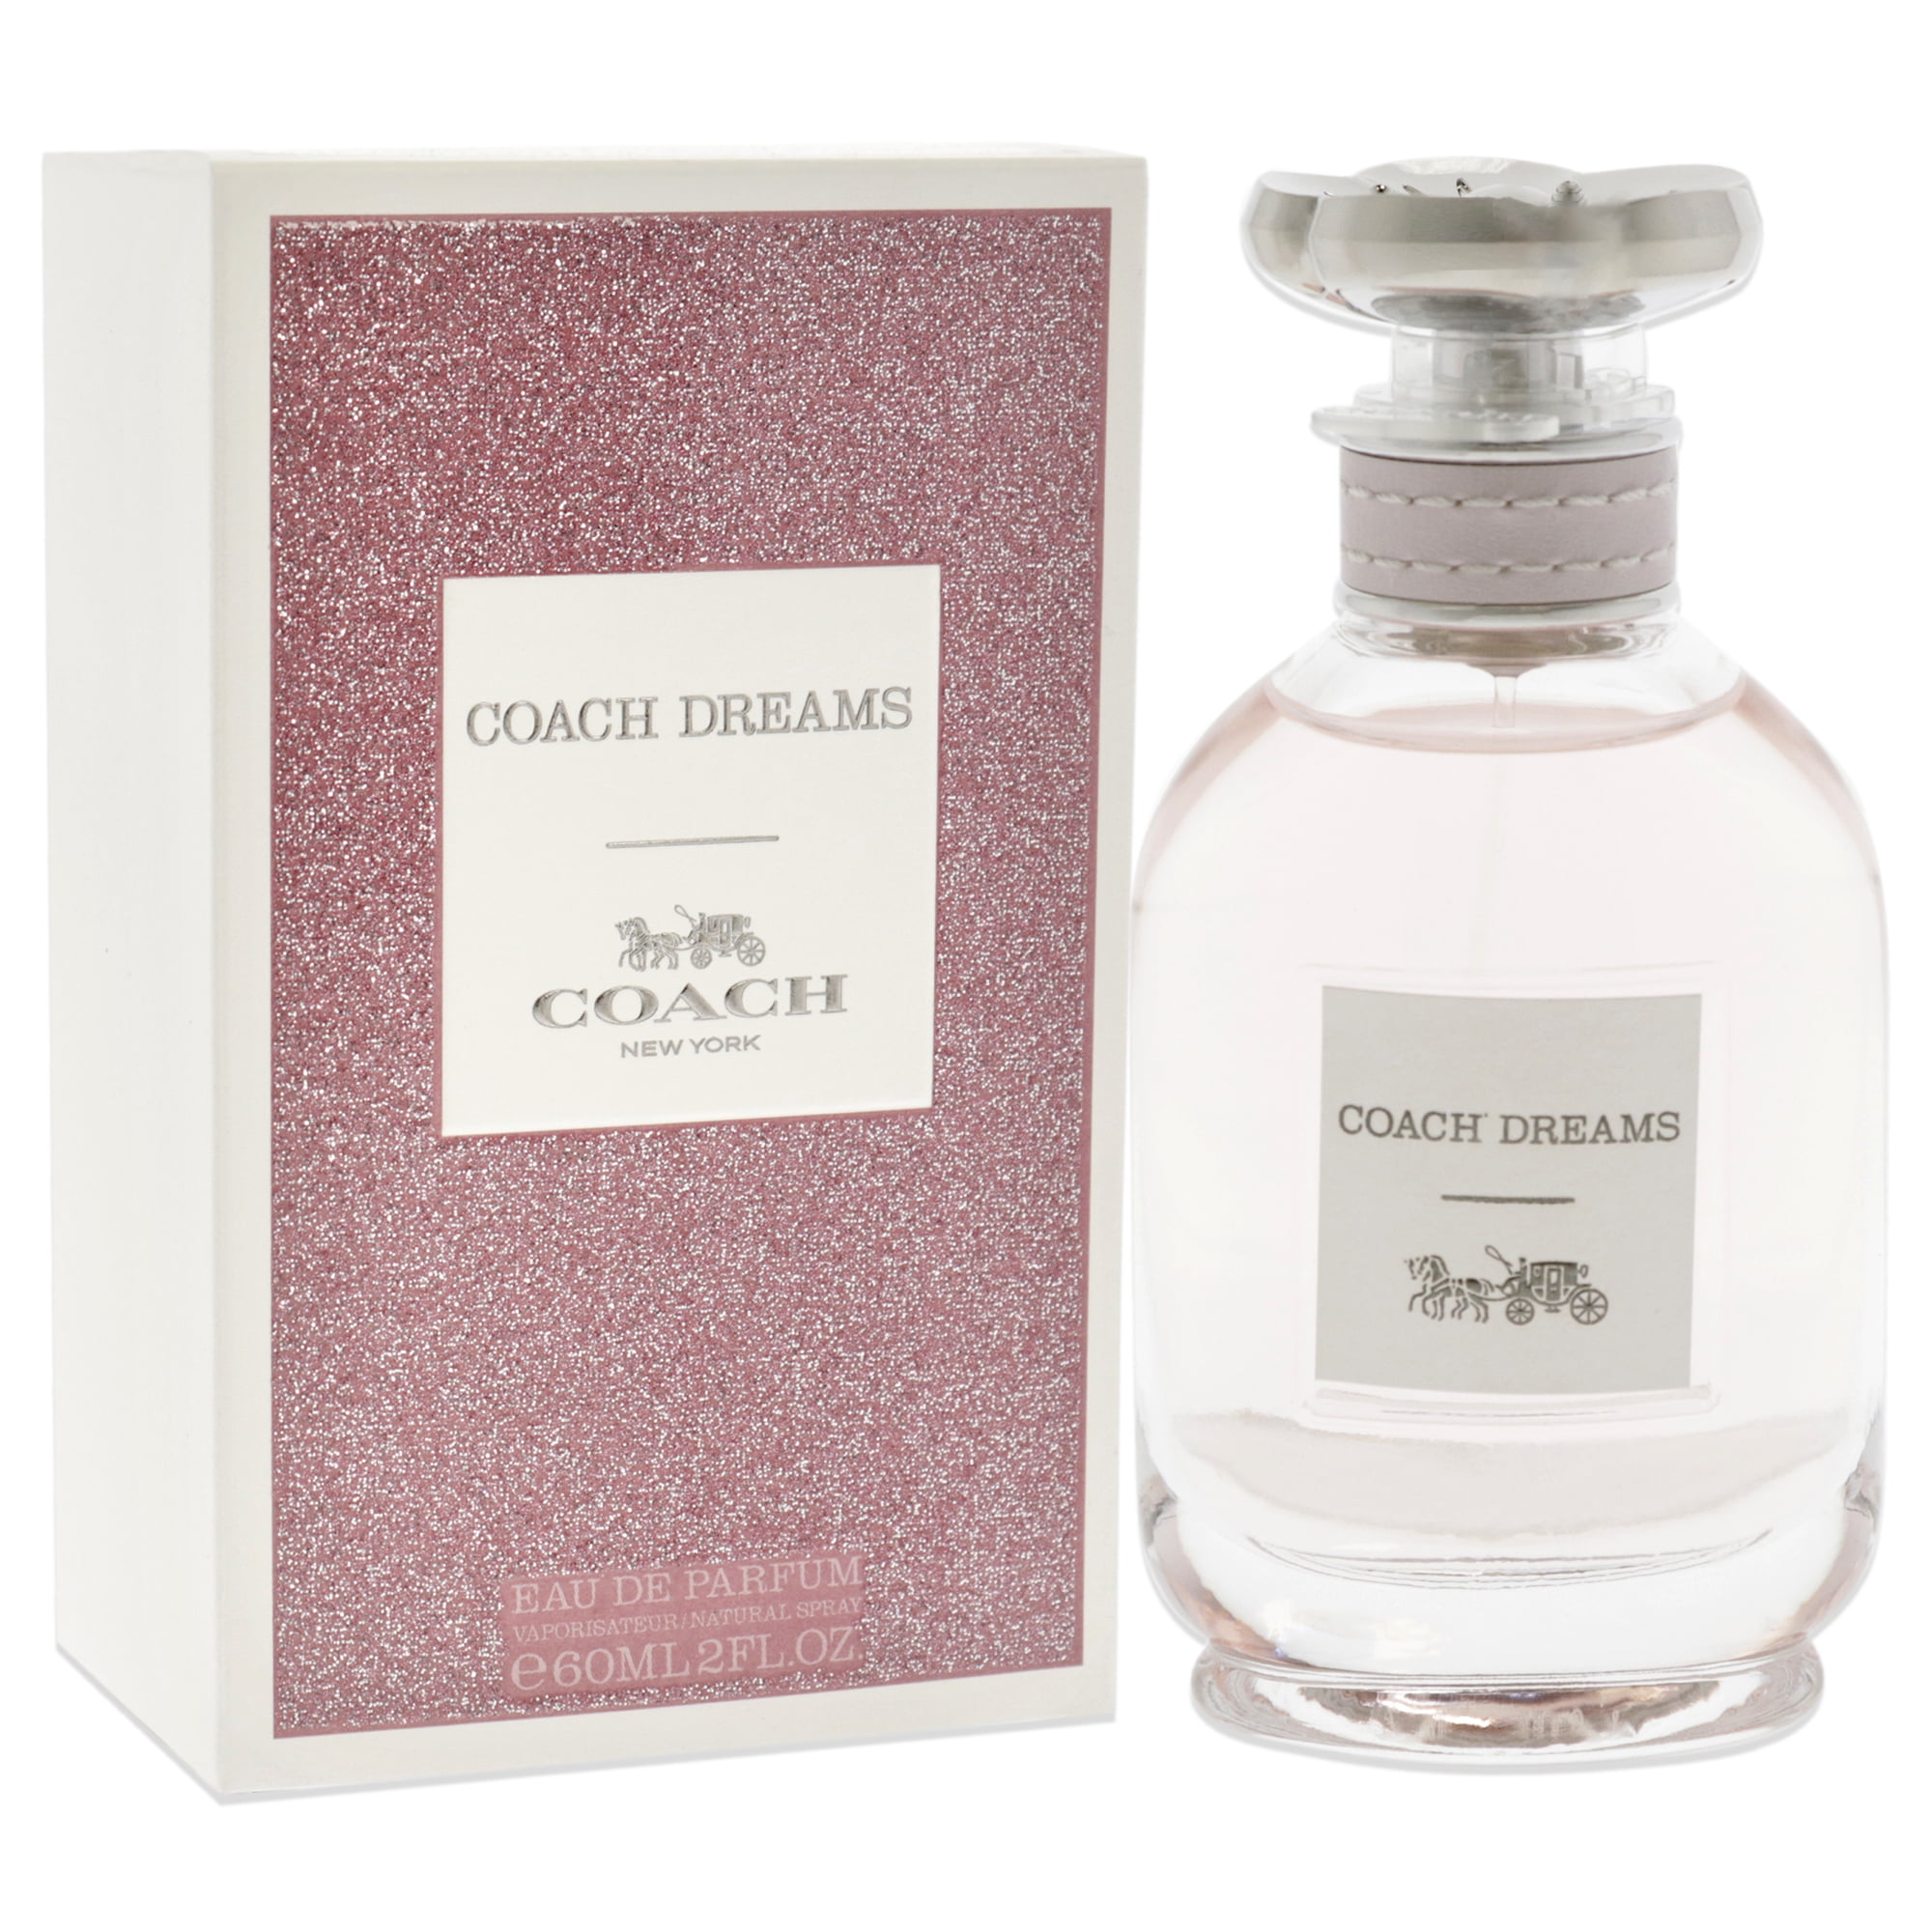 bebe Wishes & Dreams 3.4oz Women's Eau de Parfum for sale online